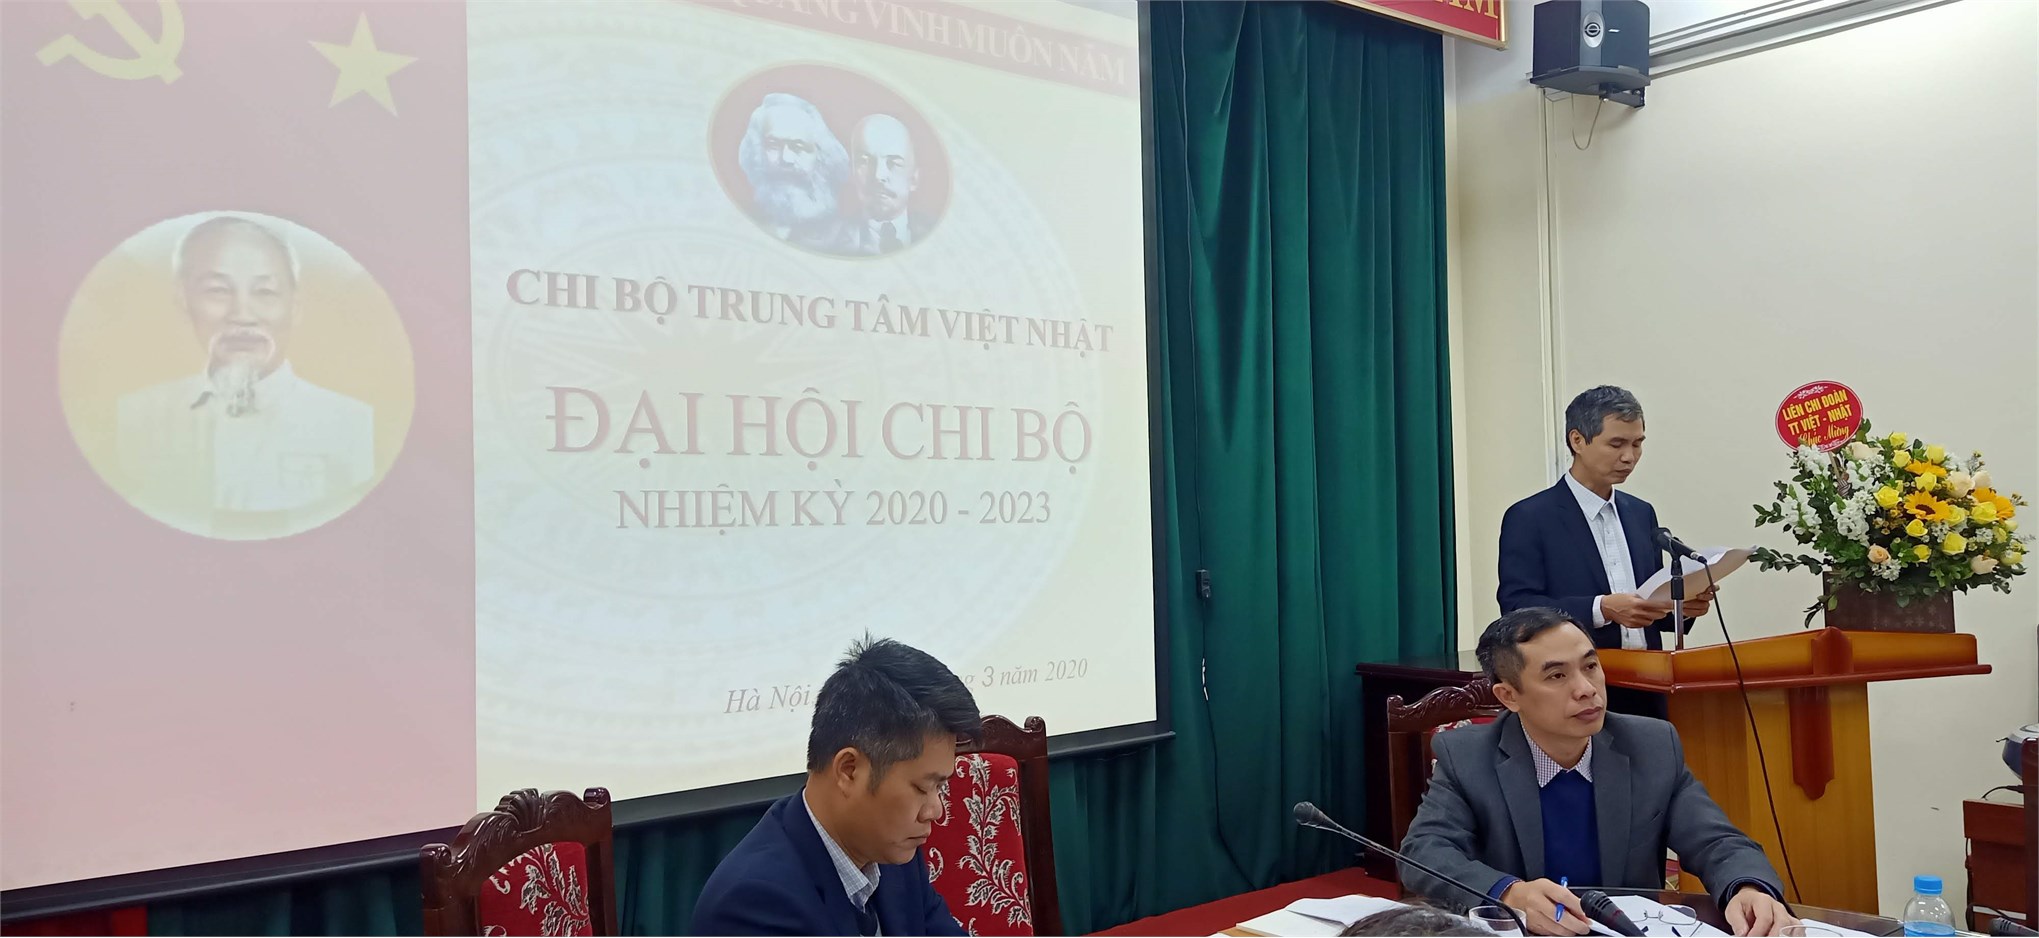 Đại hội chi bộ Trung tâm Việt – Nhật nhiệm kỳ 2020 – 2023